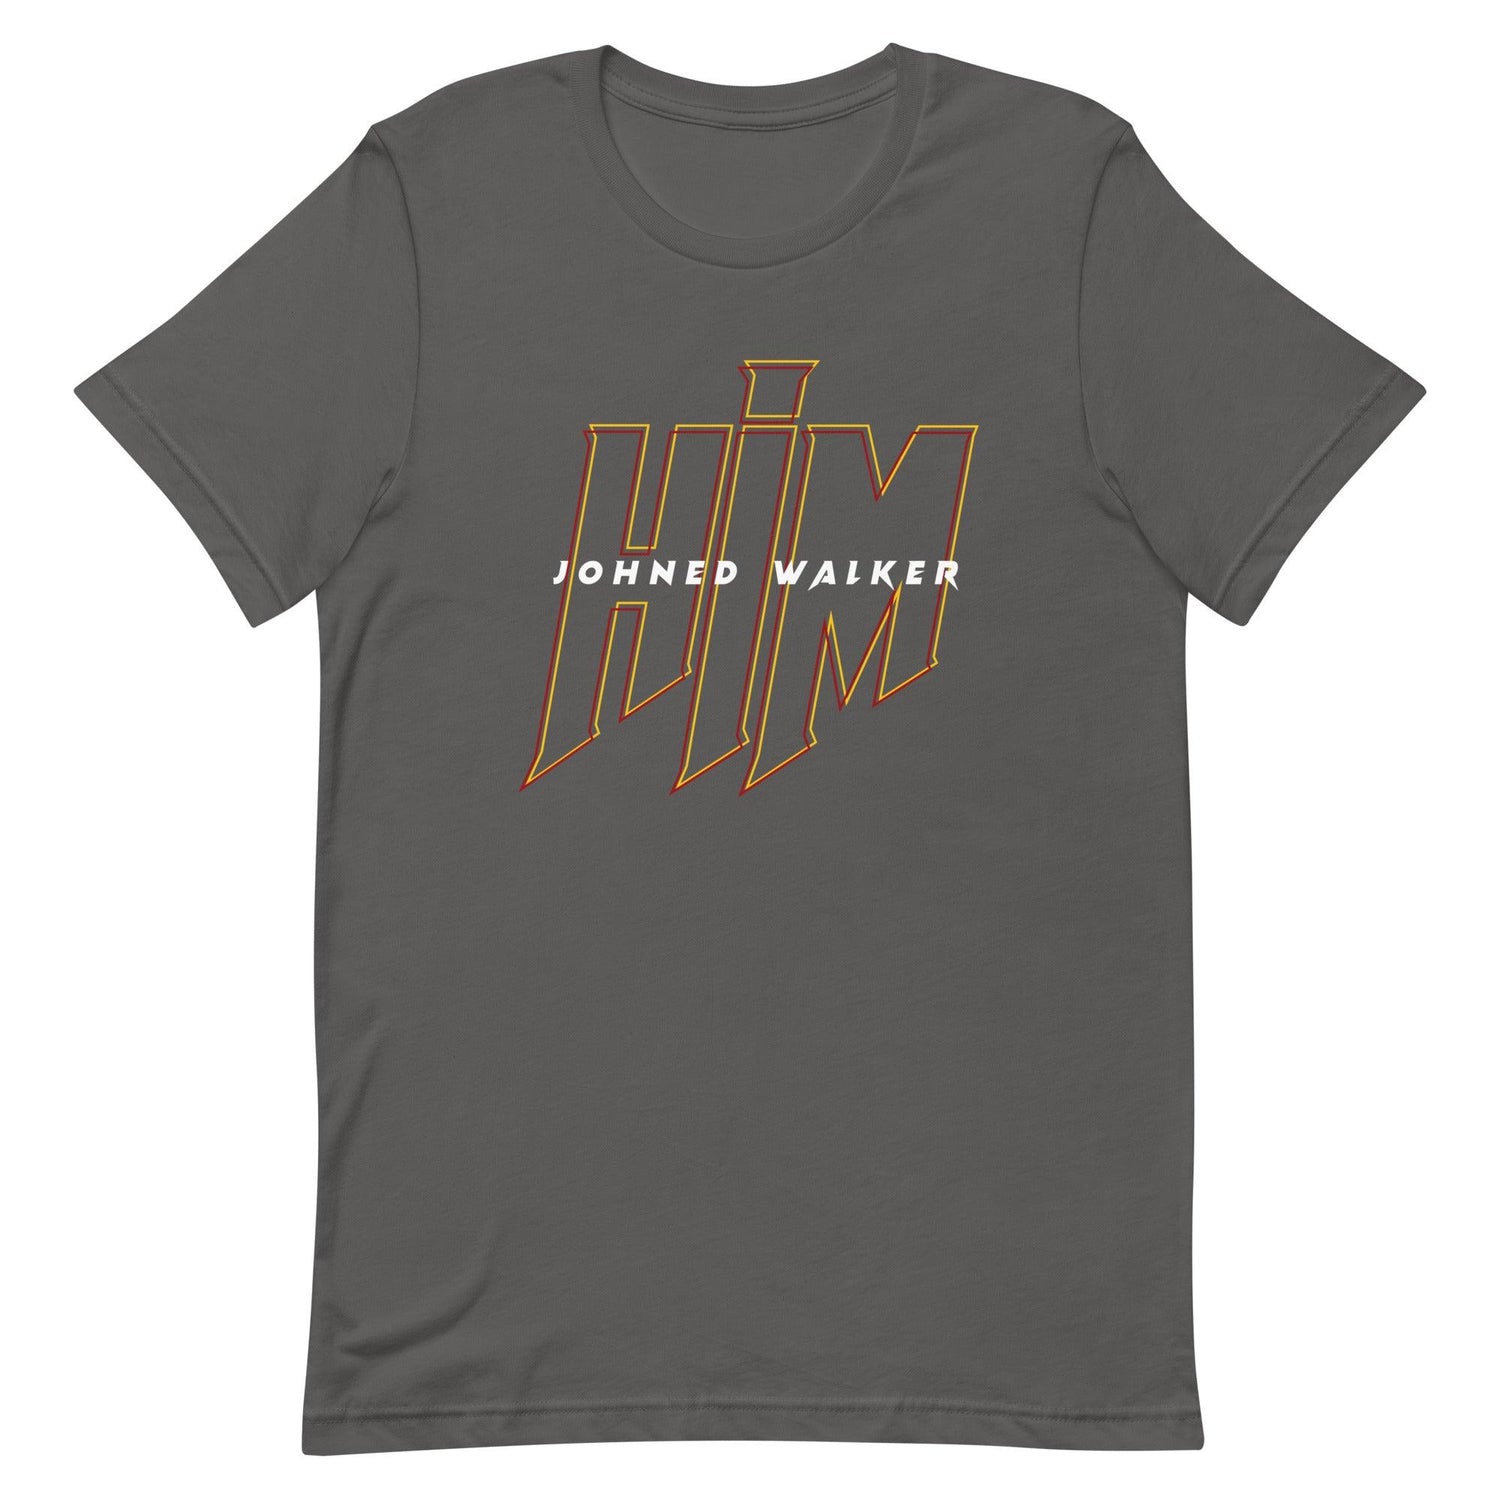 Johned Walker "HIM" t-shirt - Fan Arch